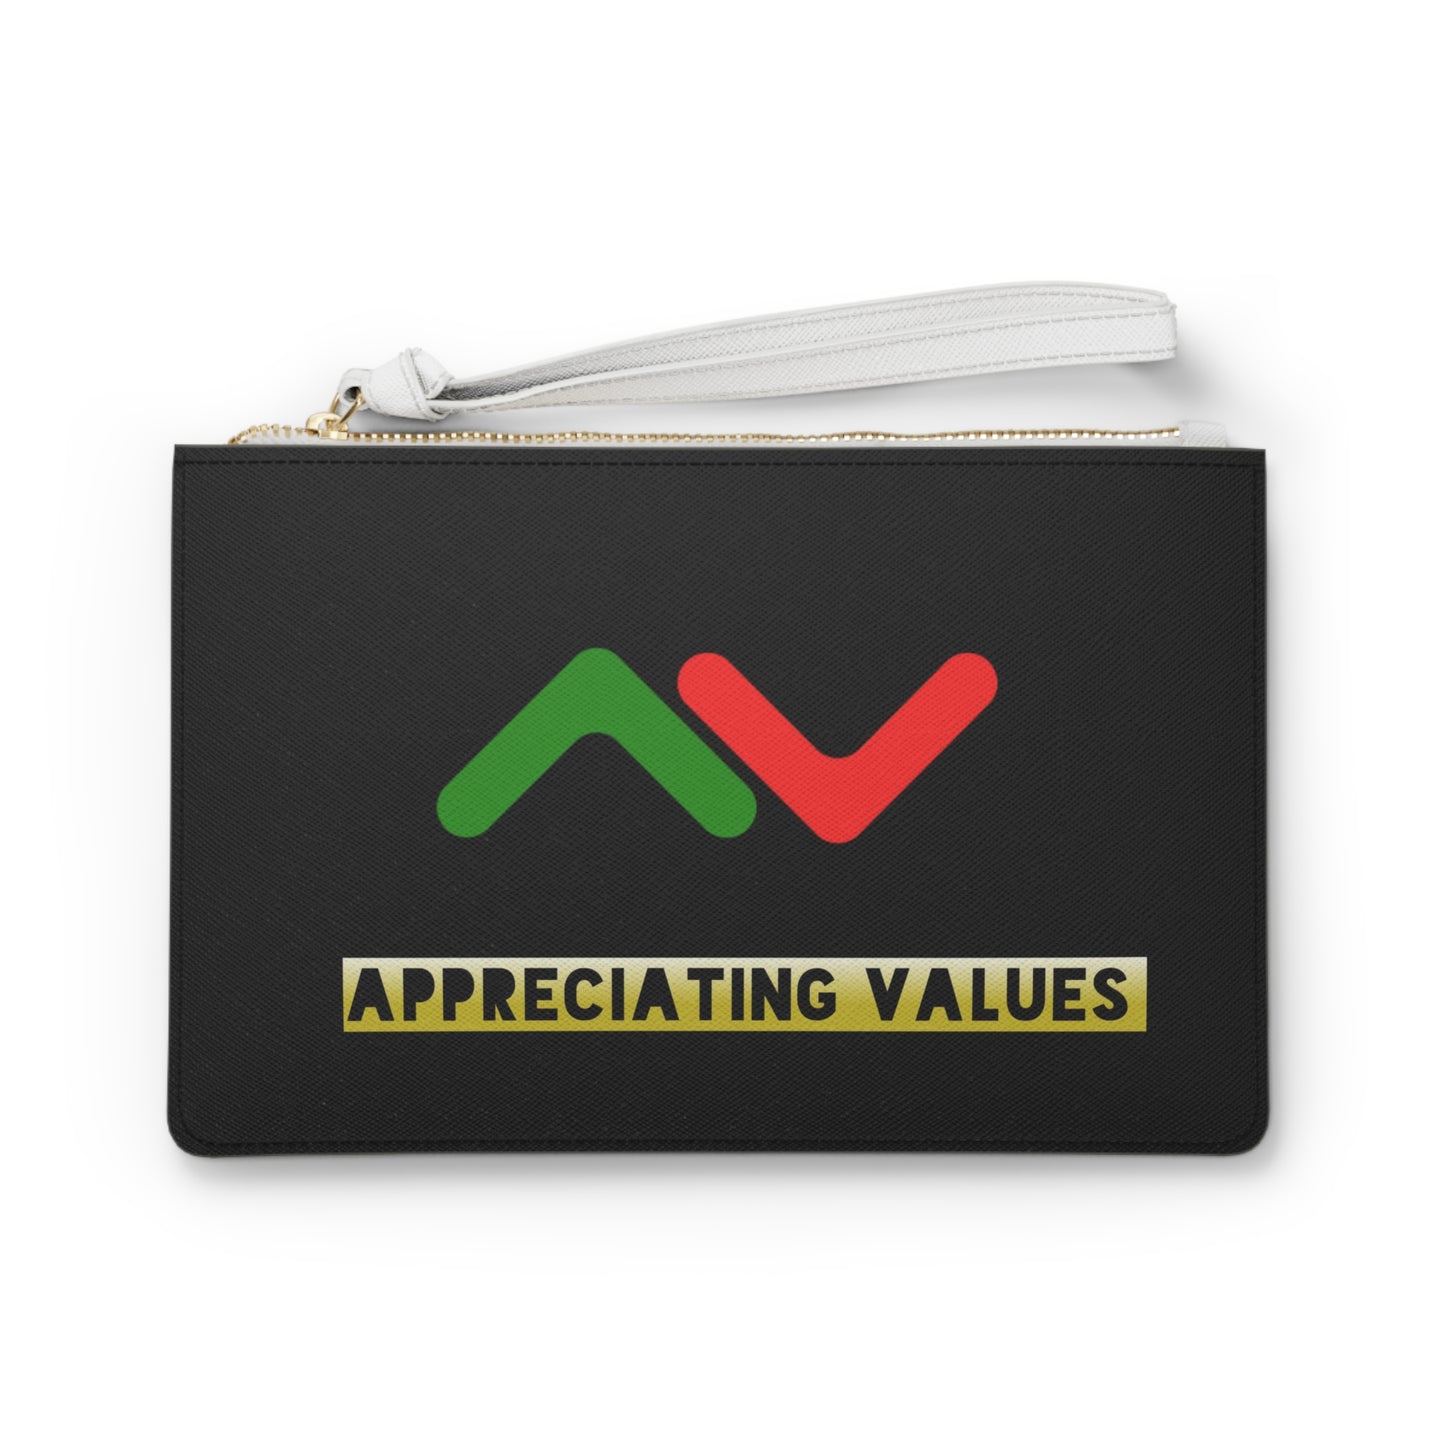 Appreciating Values Original Clutch